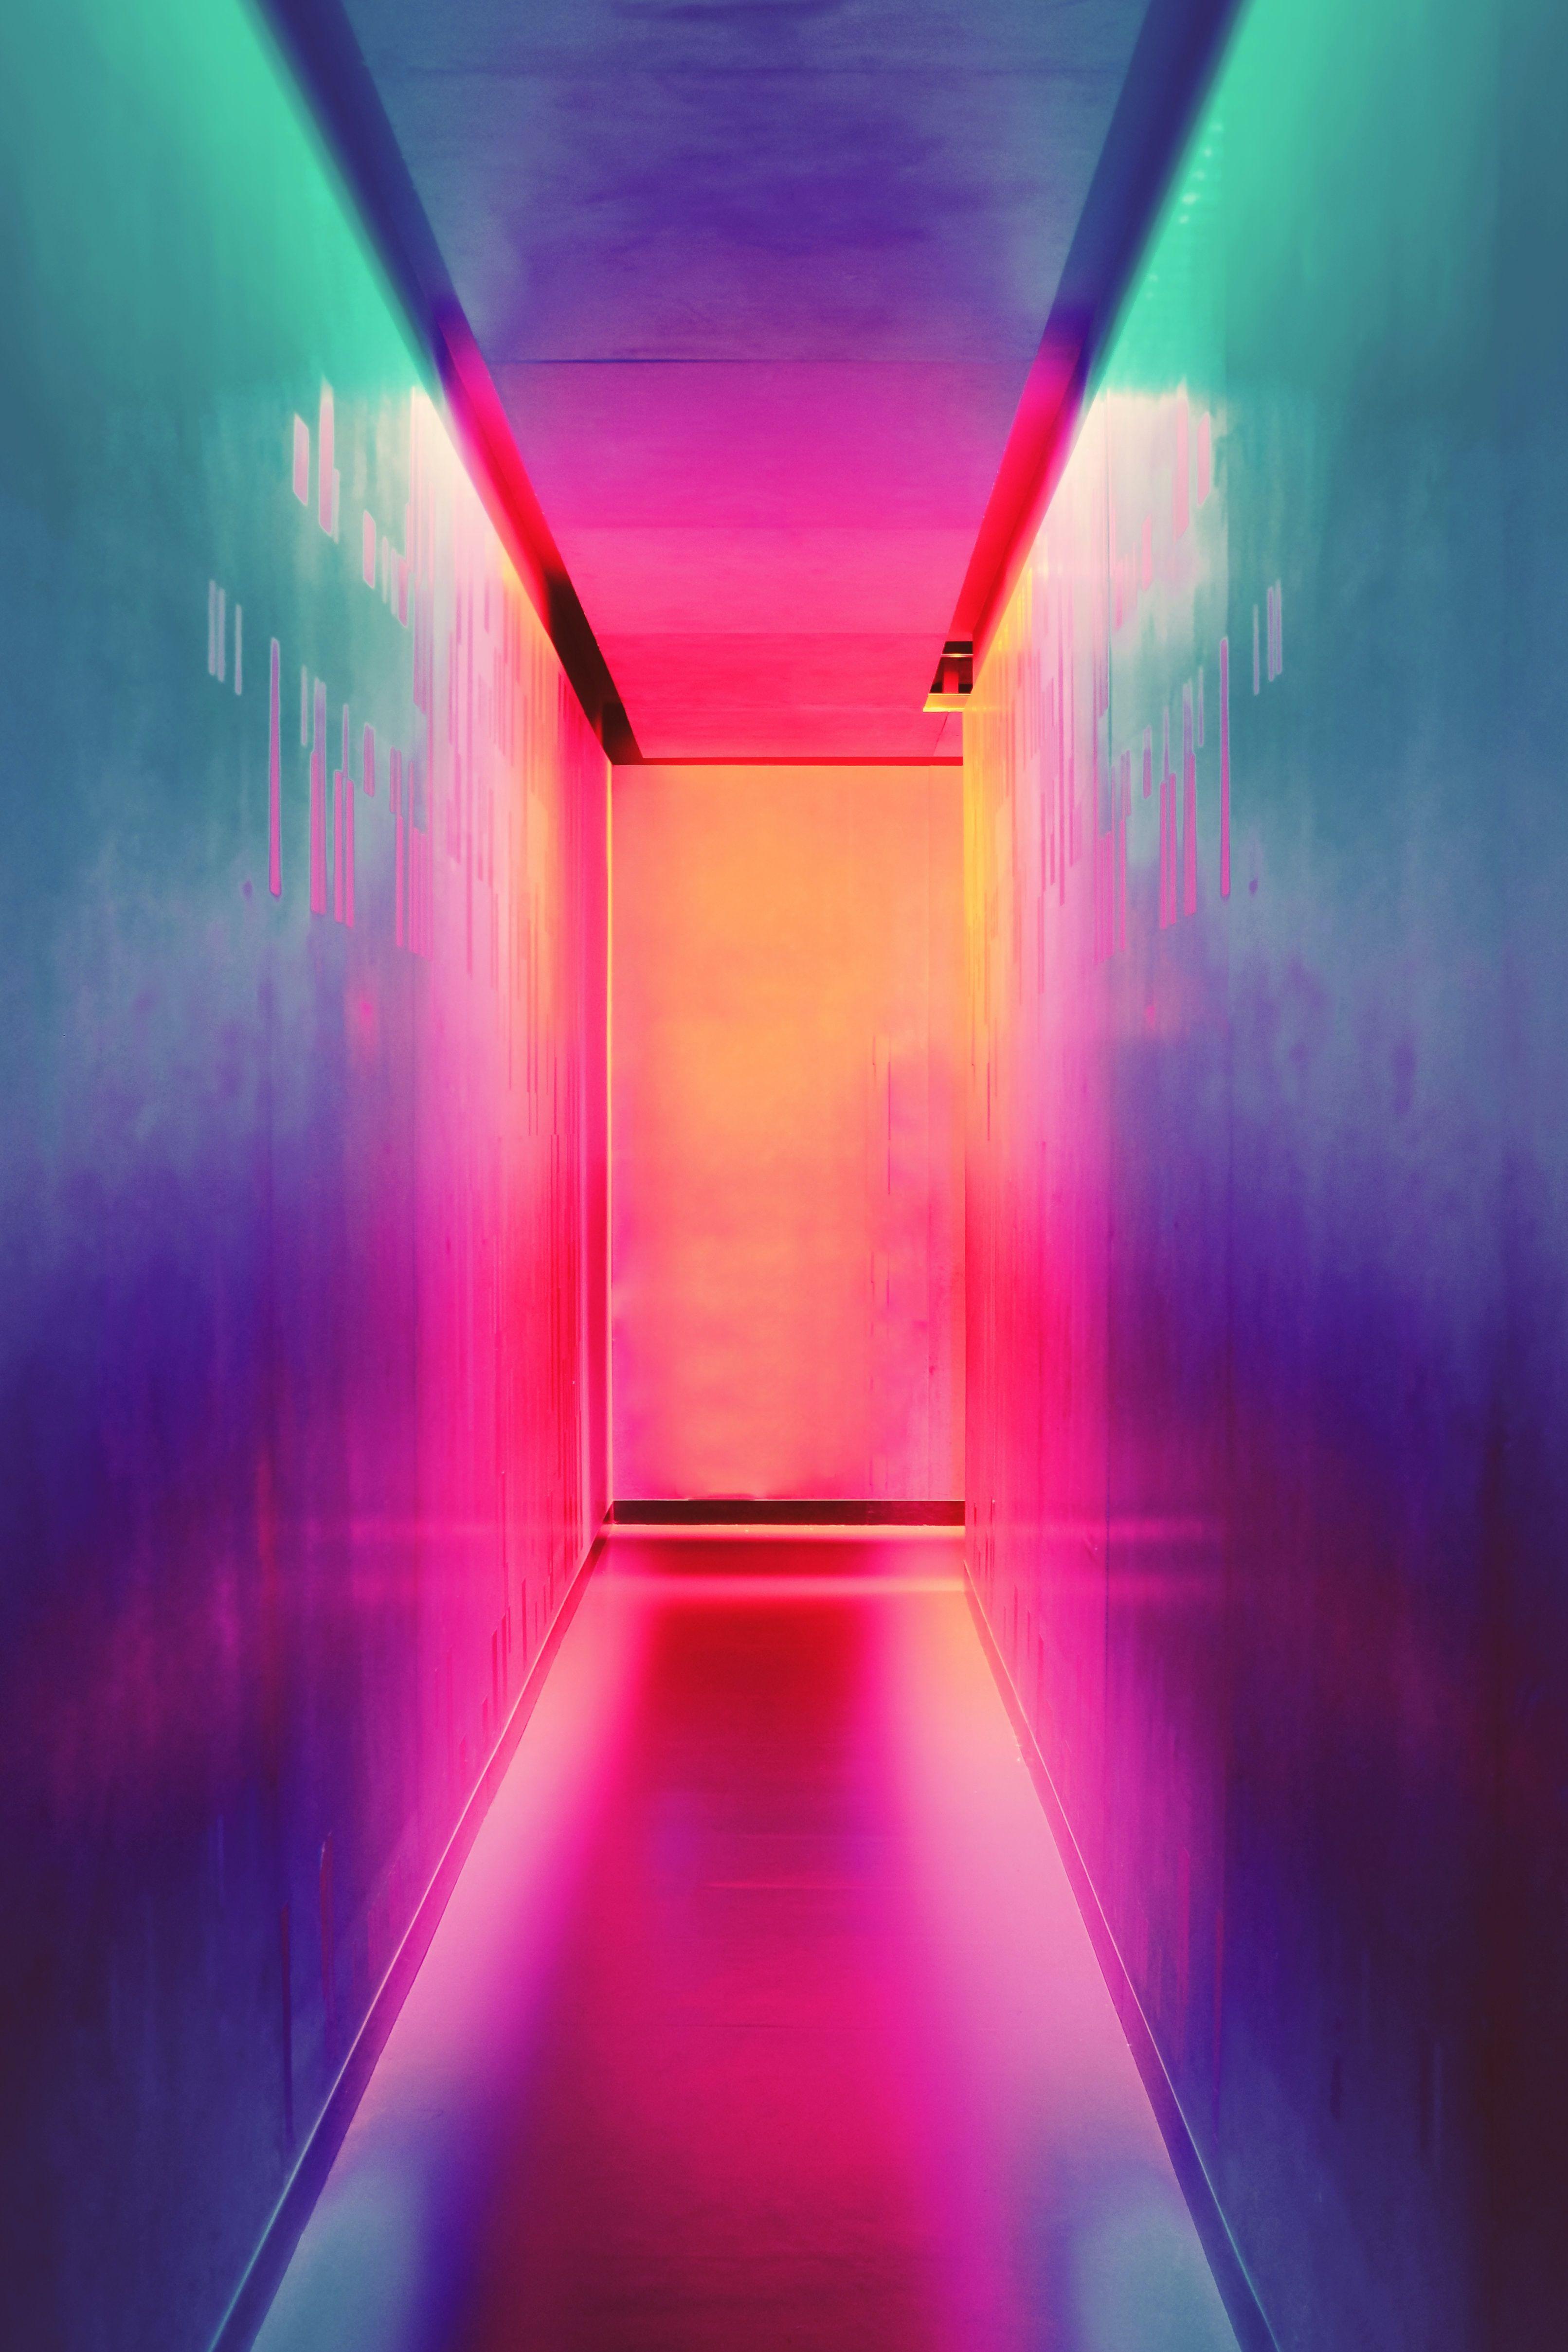 A colourful corridor